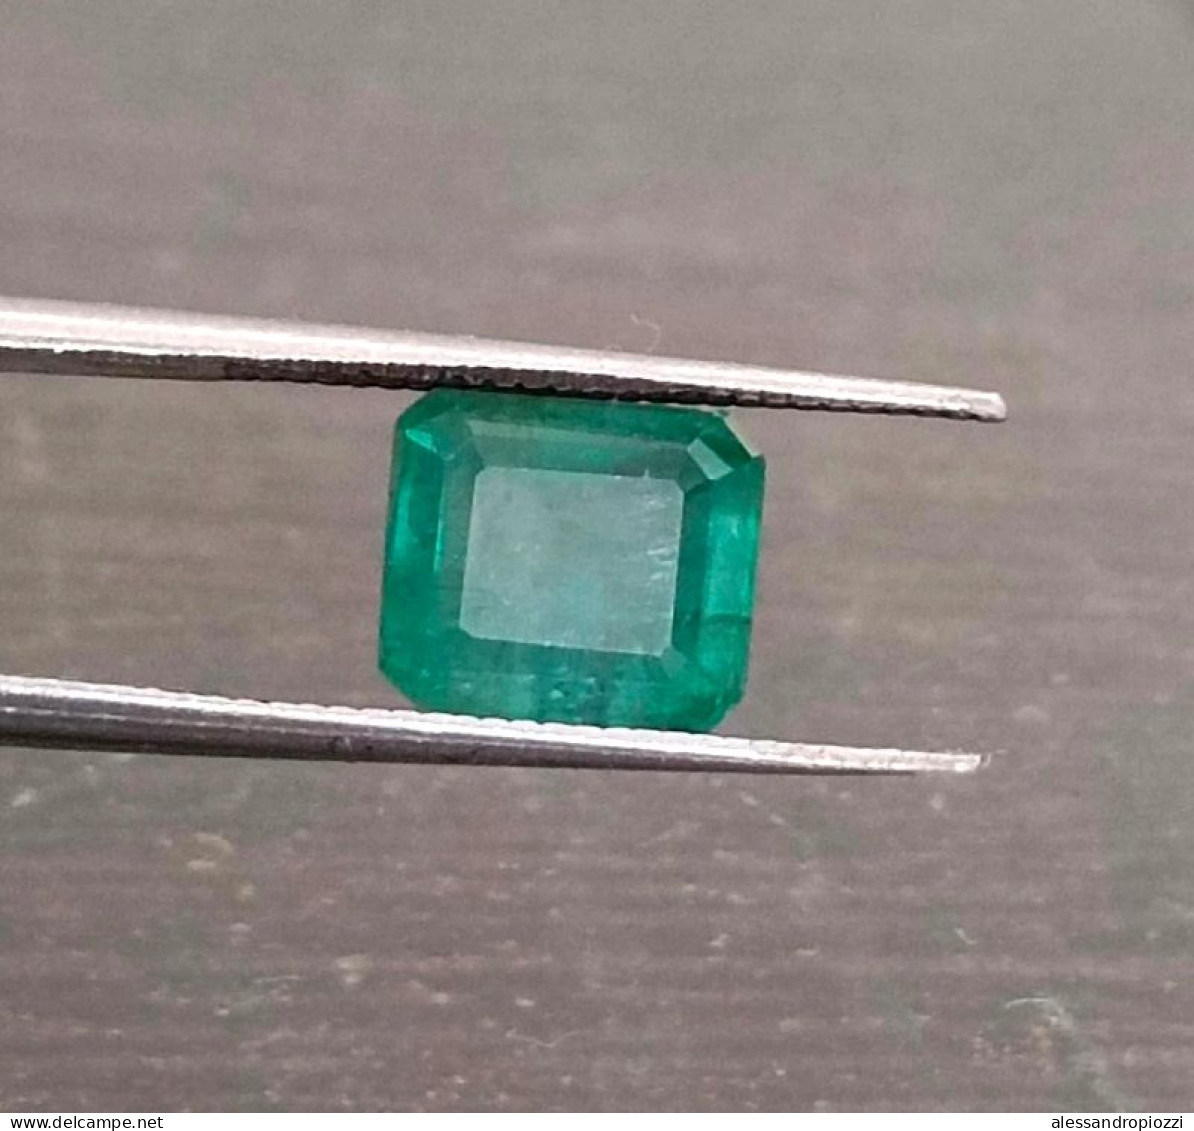 Smeraldo dello Zambia certificato IGI da 2,79 ct, pietra preziosa naturale al 100%.